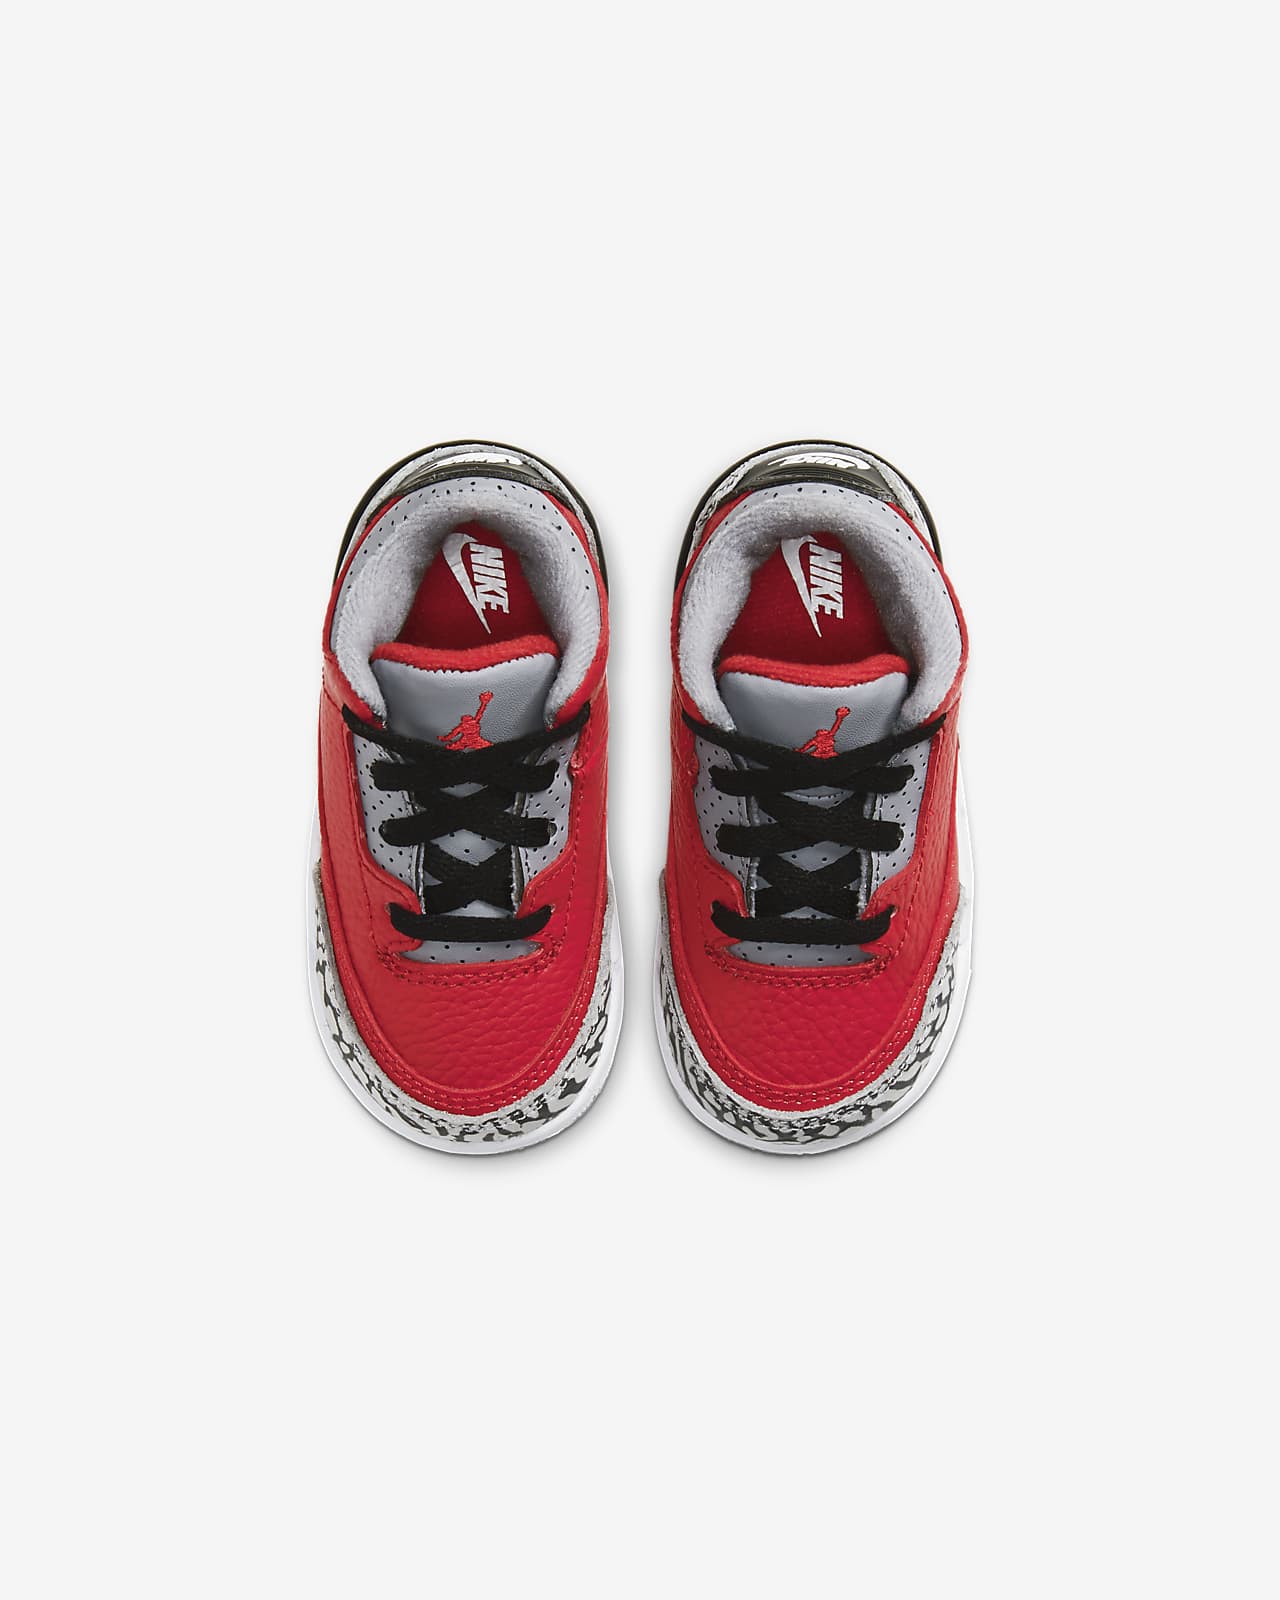 Jordan 3 Retro SE Baby/Toddler Shoe 